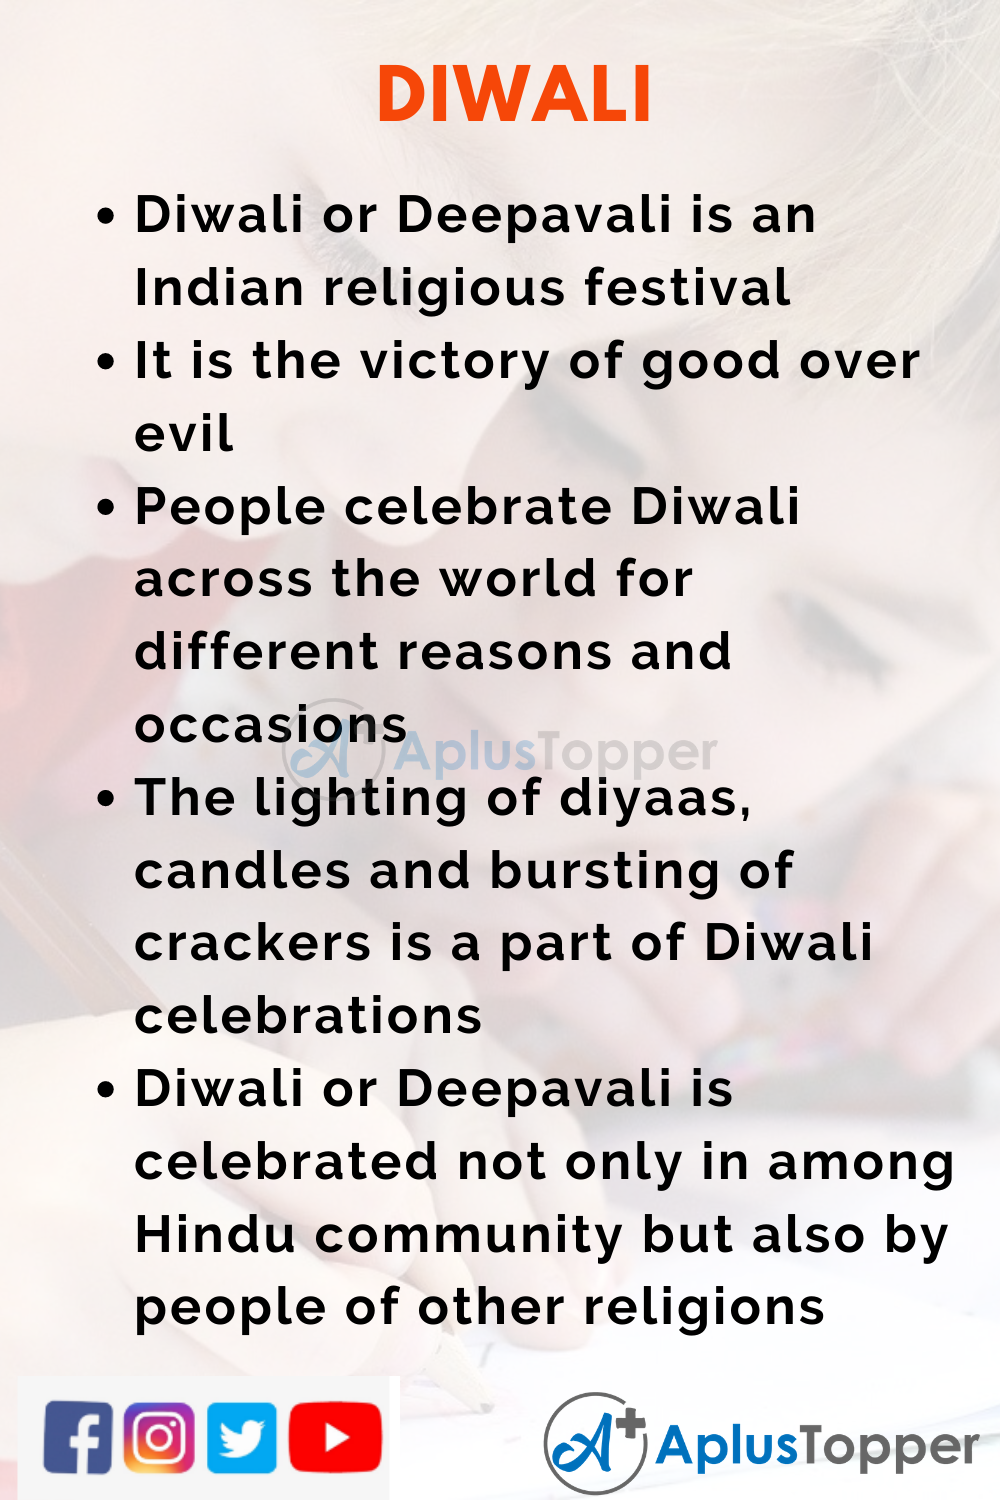 diwali essay 10 lines easy